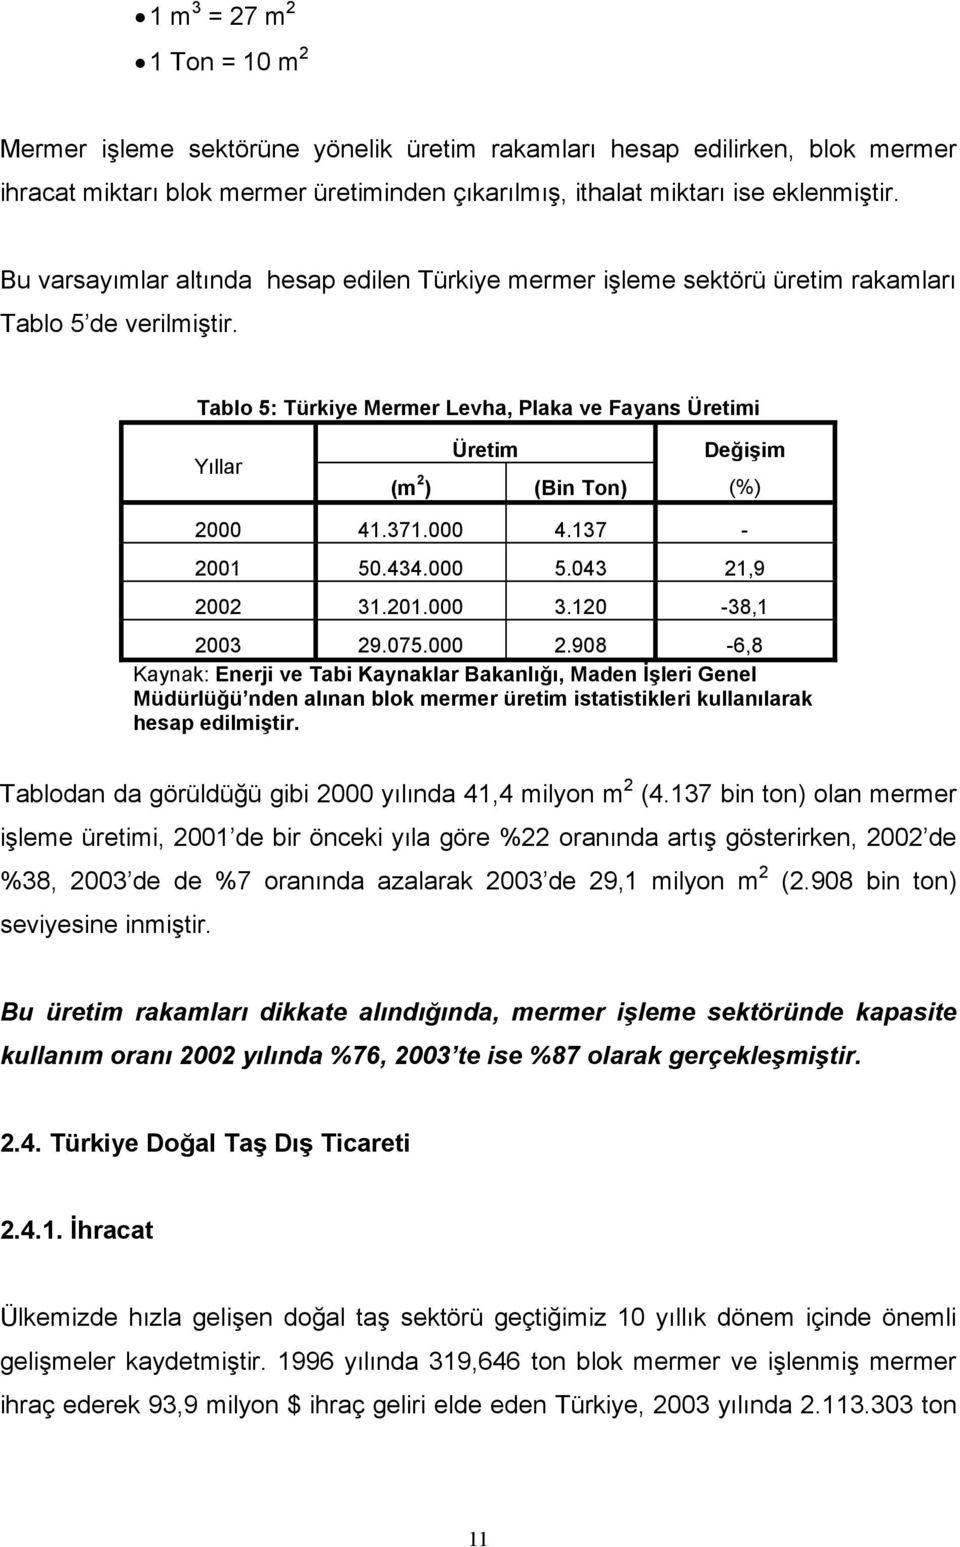 Tablo 5: Türkiye Mermer Levha, Plaka ve Fayans Üretimi Yıllar Üretim (m 2 ) (Bin Ton) Değişim (%) 2000 41.371.000 4.137-2001 50.434.000 5.043 21,9 2002 31.201.000 3.120-38,1 2003 29.075.000 2.